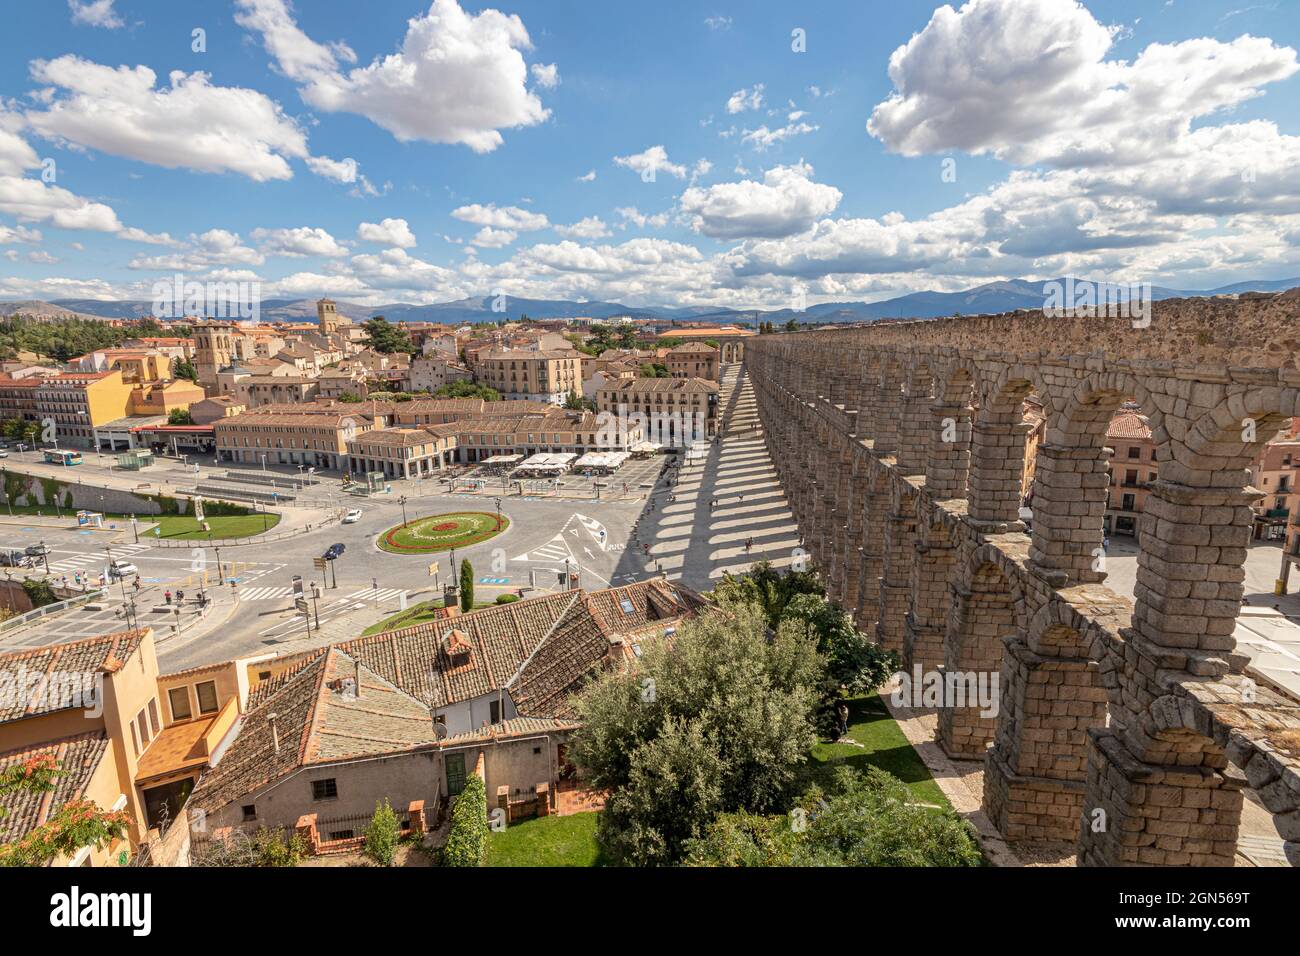 Ségovie, Espagne. Vue sur la vieille ville et l'Acueducto de Segovia, un aqueduc romain ou un pont d'eau construit au 1er siècle après J.-C. Banque D'Images